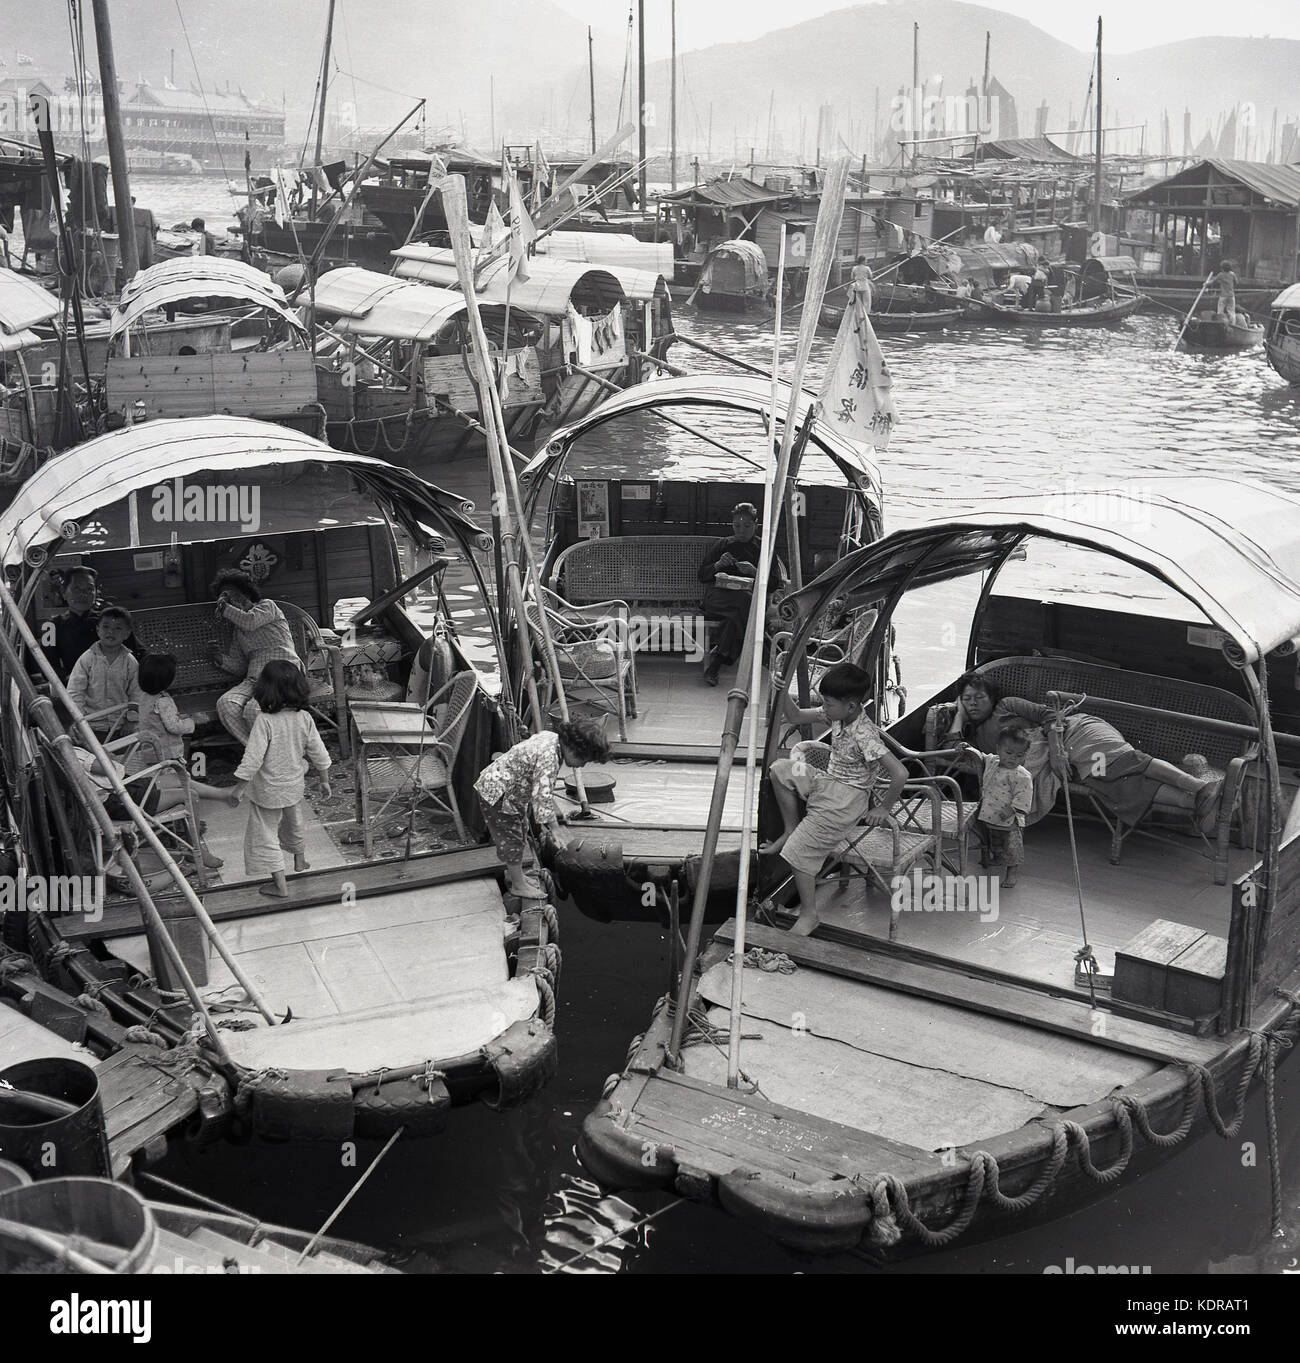 Années 1950, historiques, les mères avec leurs enfants sur leurs junks (bateaux) amarrés au village flottant d'Aberdeen, port d'Aberdeen, Hong Kong. Banque D'Images